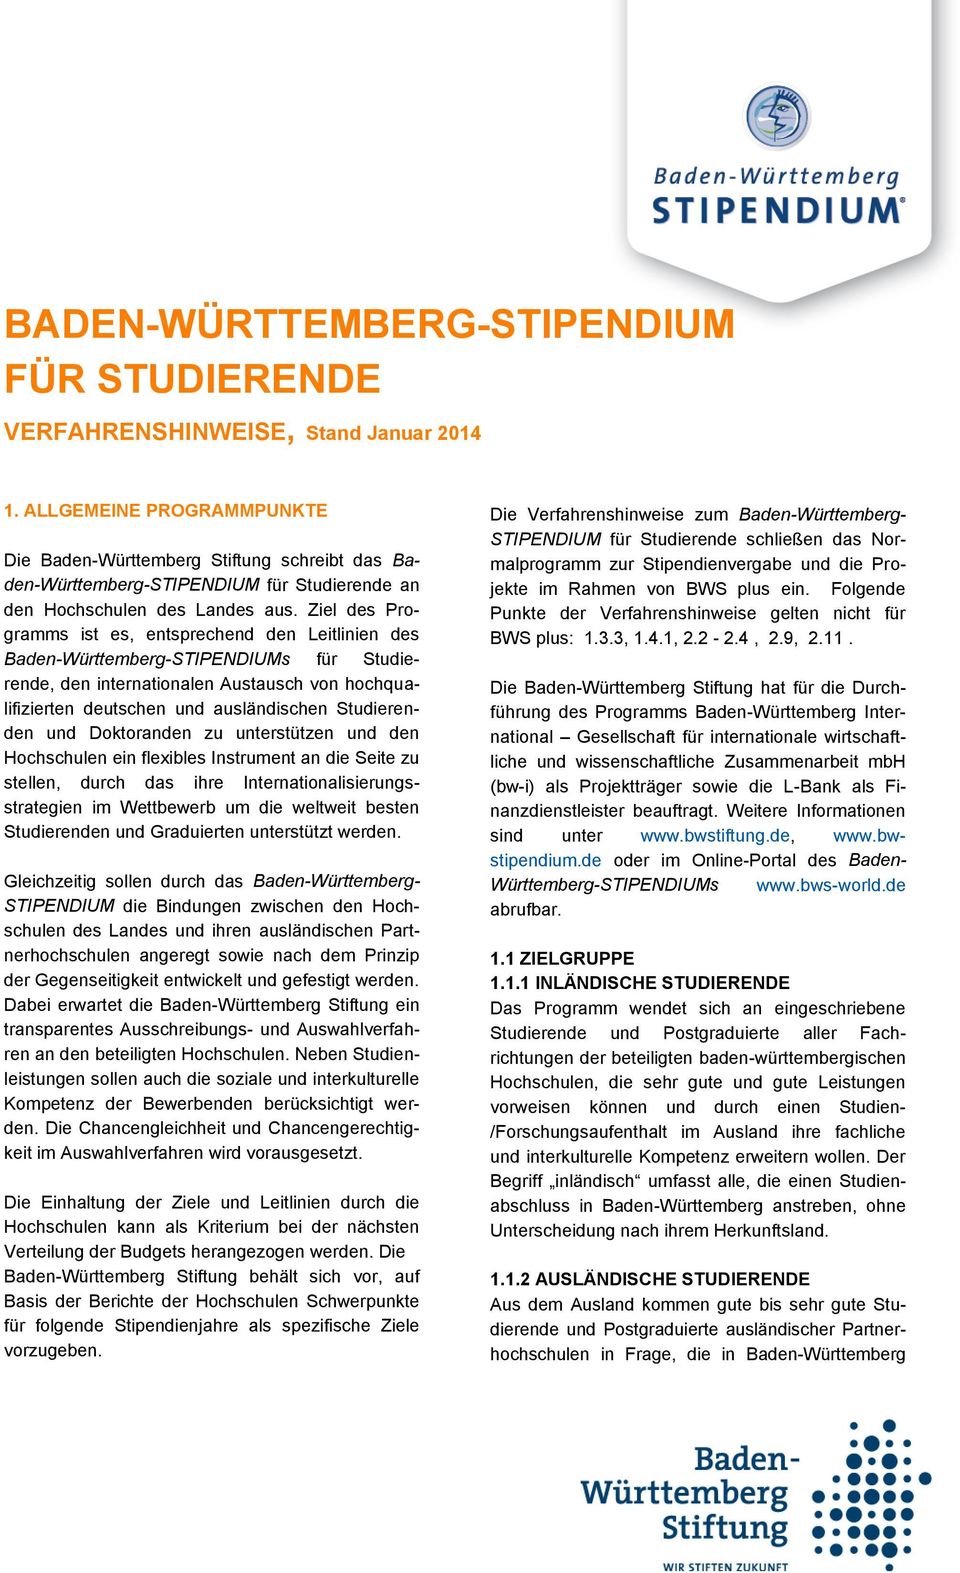 Ziel des Programms ist es, entsprechend den Leitlinien des Baden-Württemberg-STIPENDIUMs für Studierende, den internationalen Austausch von hochqualifizierten deutschen und ausländischen Studierenden